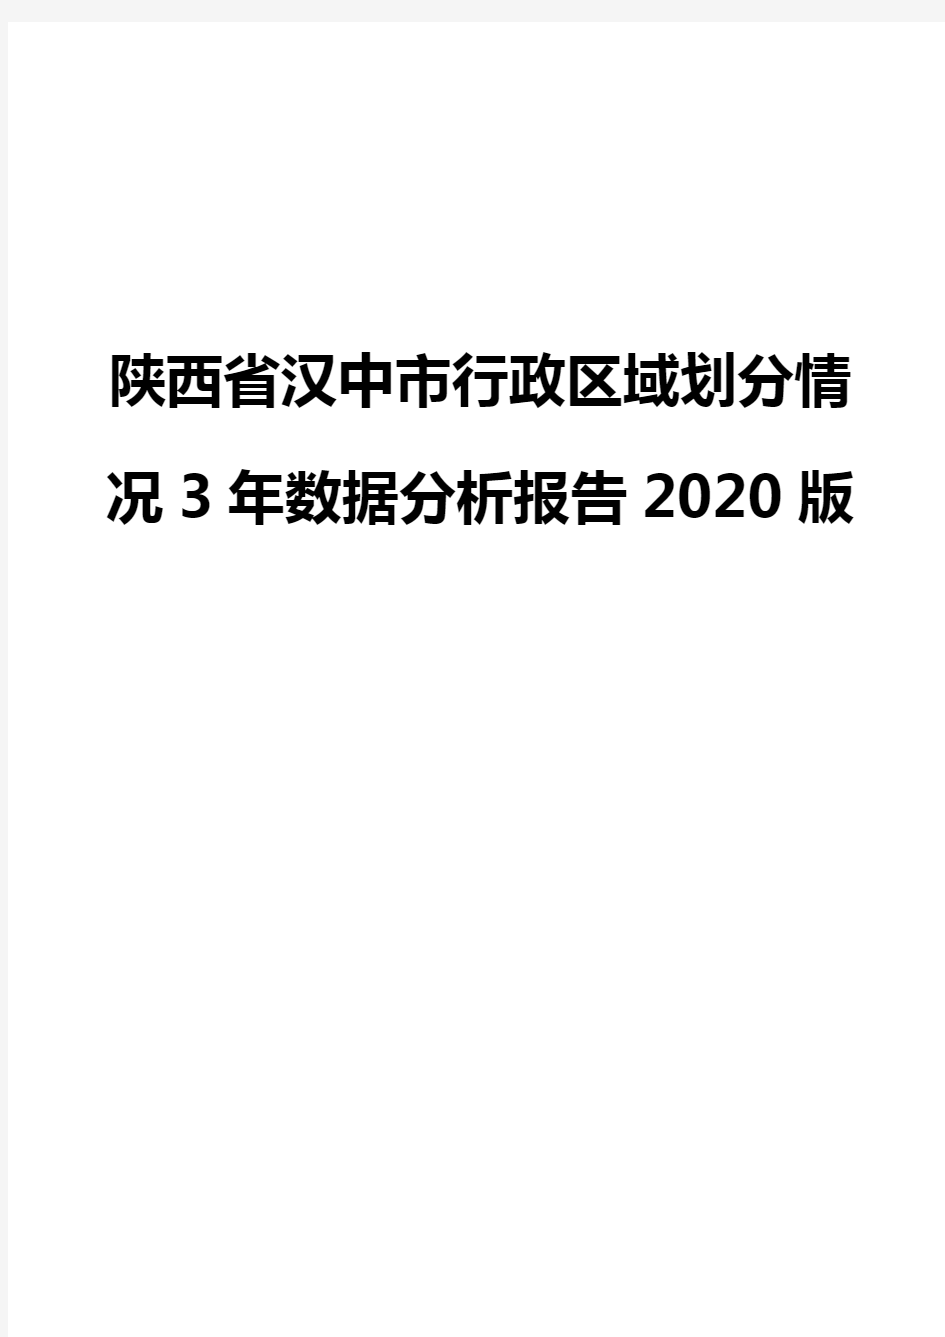 陕西省汉中市行政区域划分情况3年数据分析报告2020版